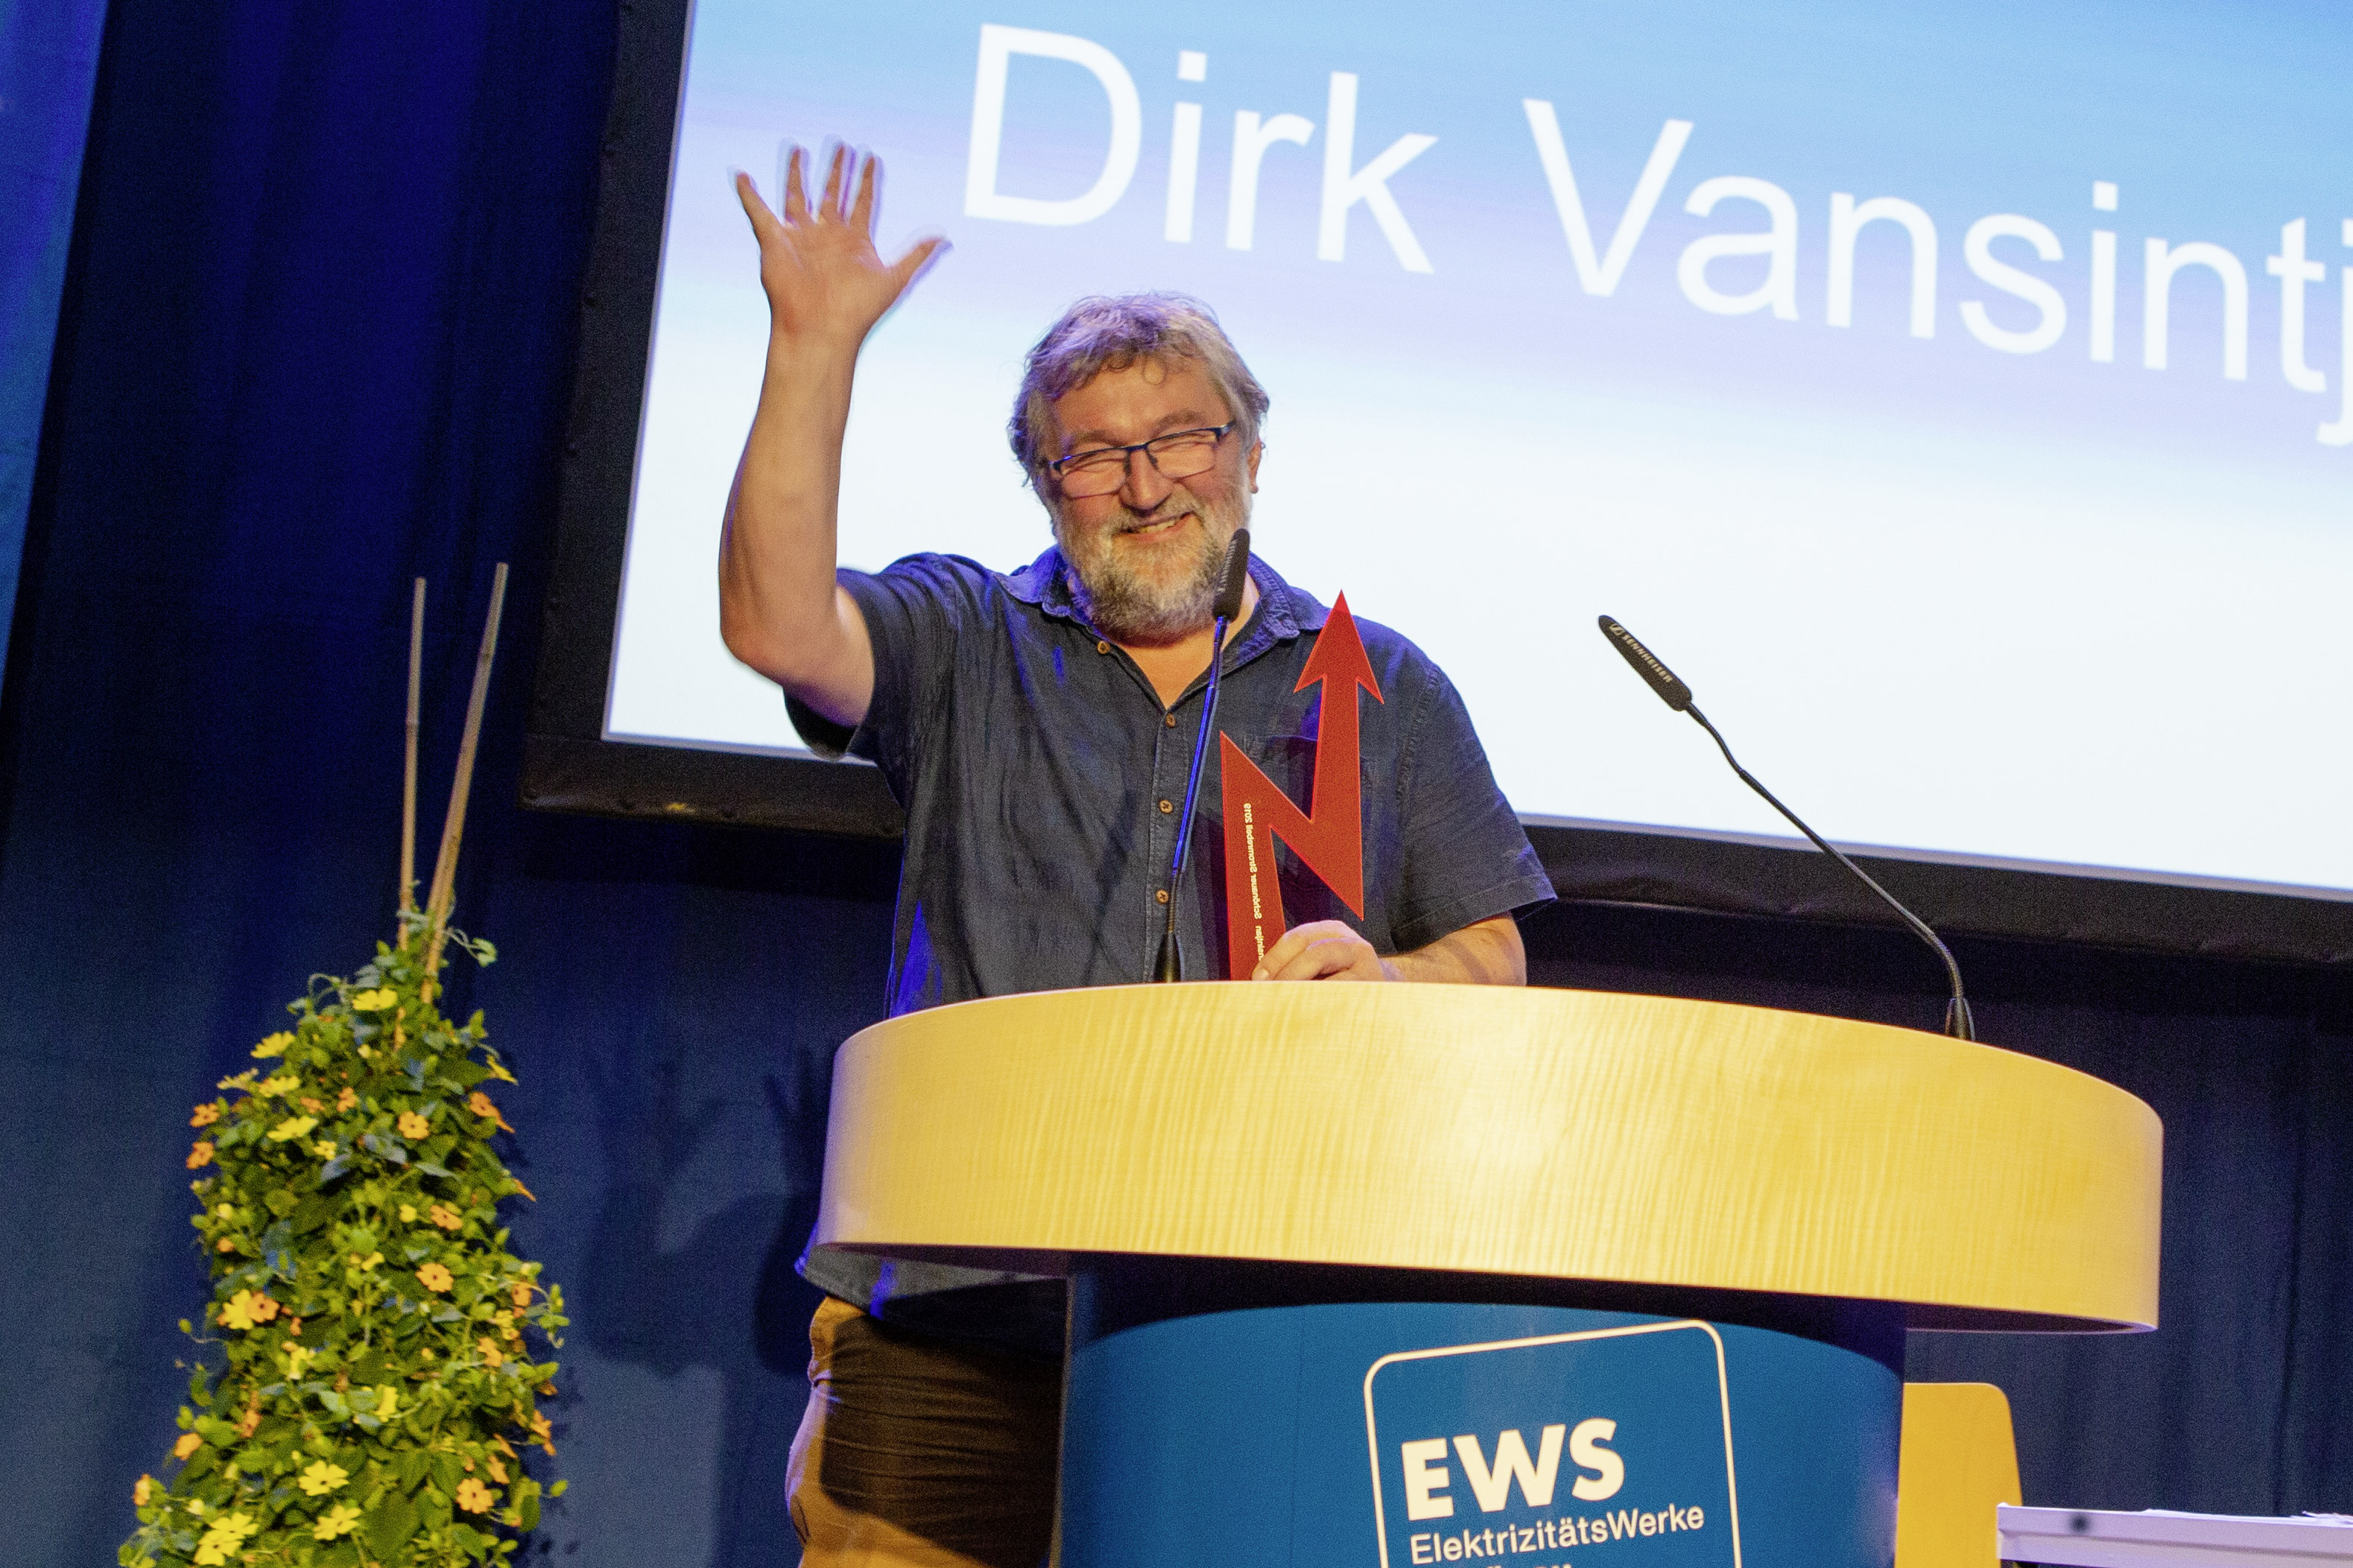 Dirk Vansintjan hebt – an einem Vortragspodium stehend – grüßend die Hand.